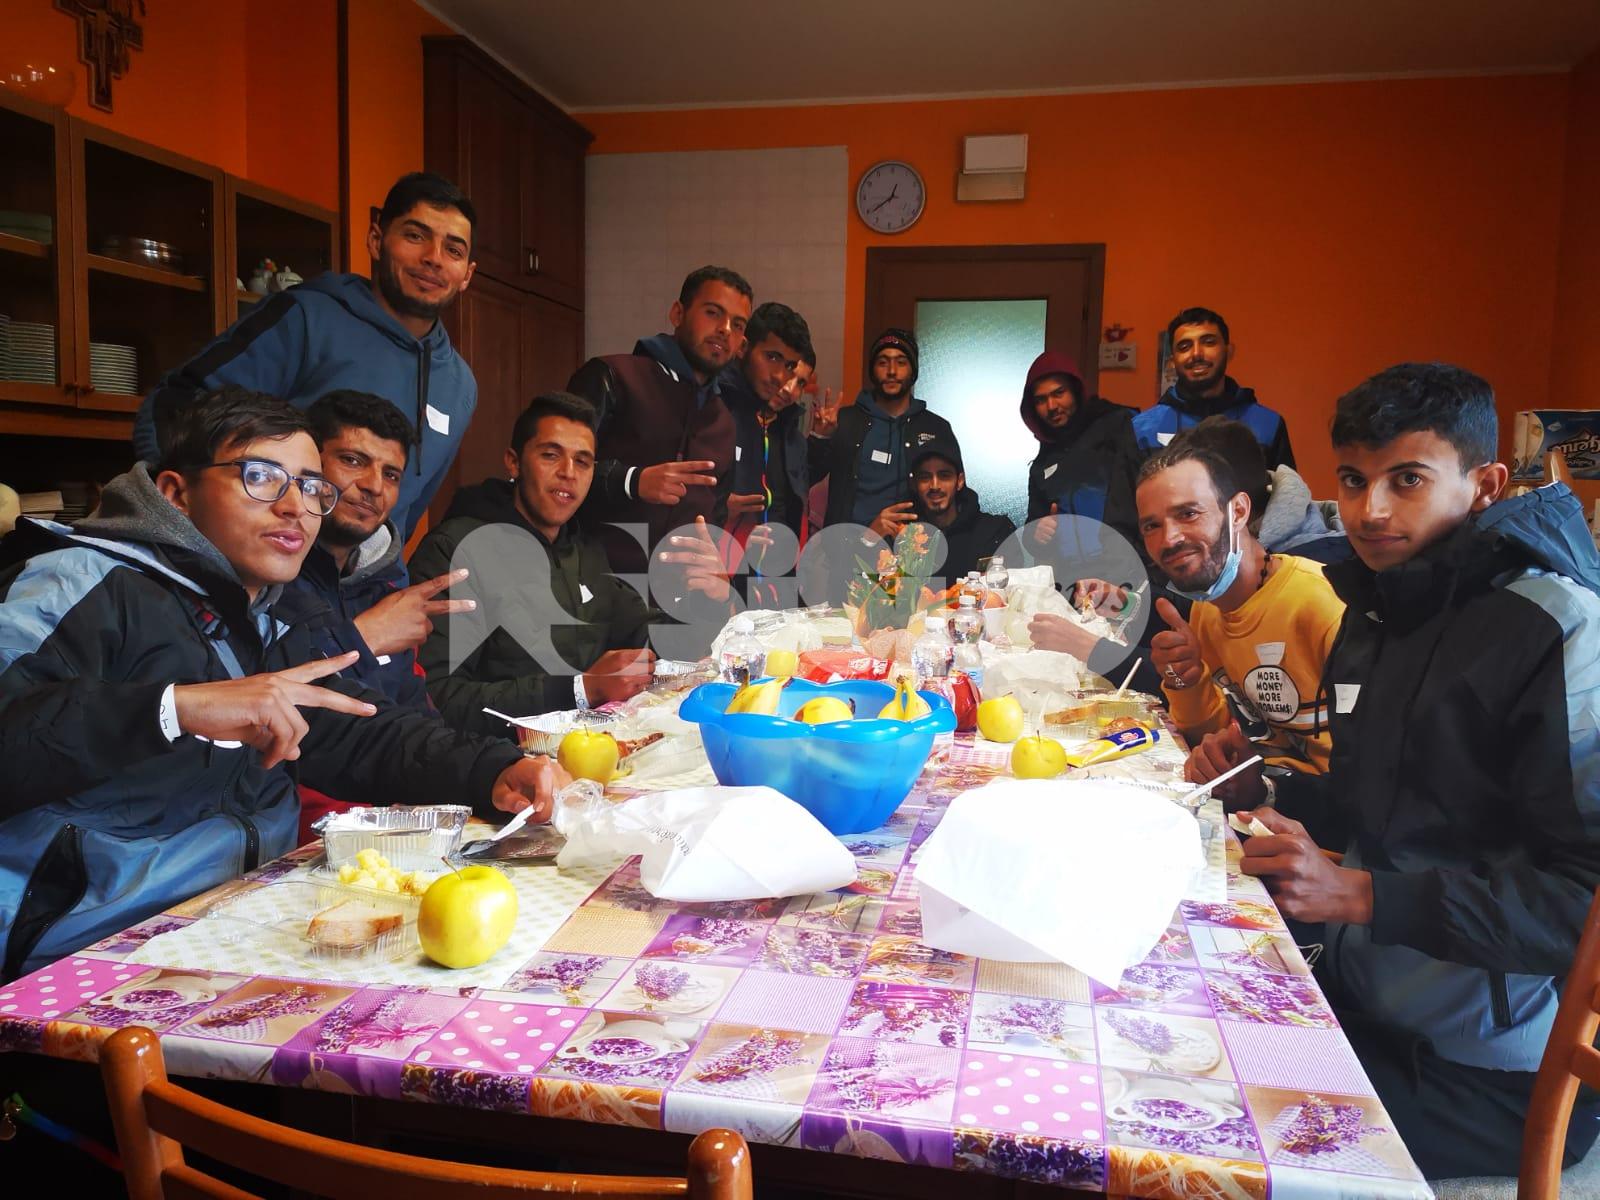 Ad Assisi accolti 15 migranti provenienti da Lampedusa